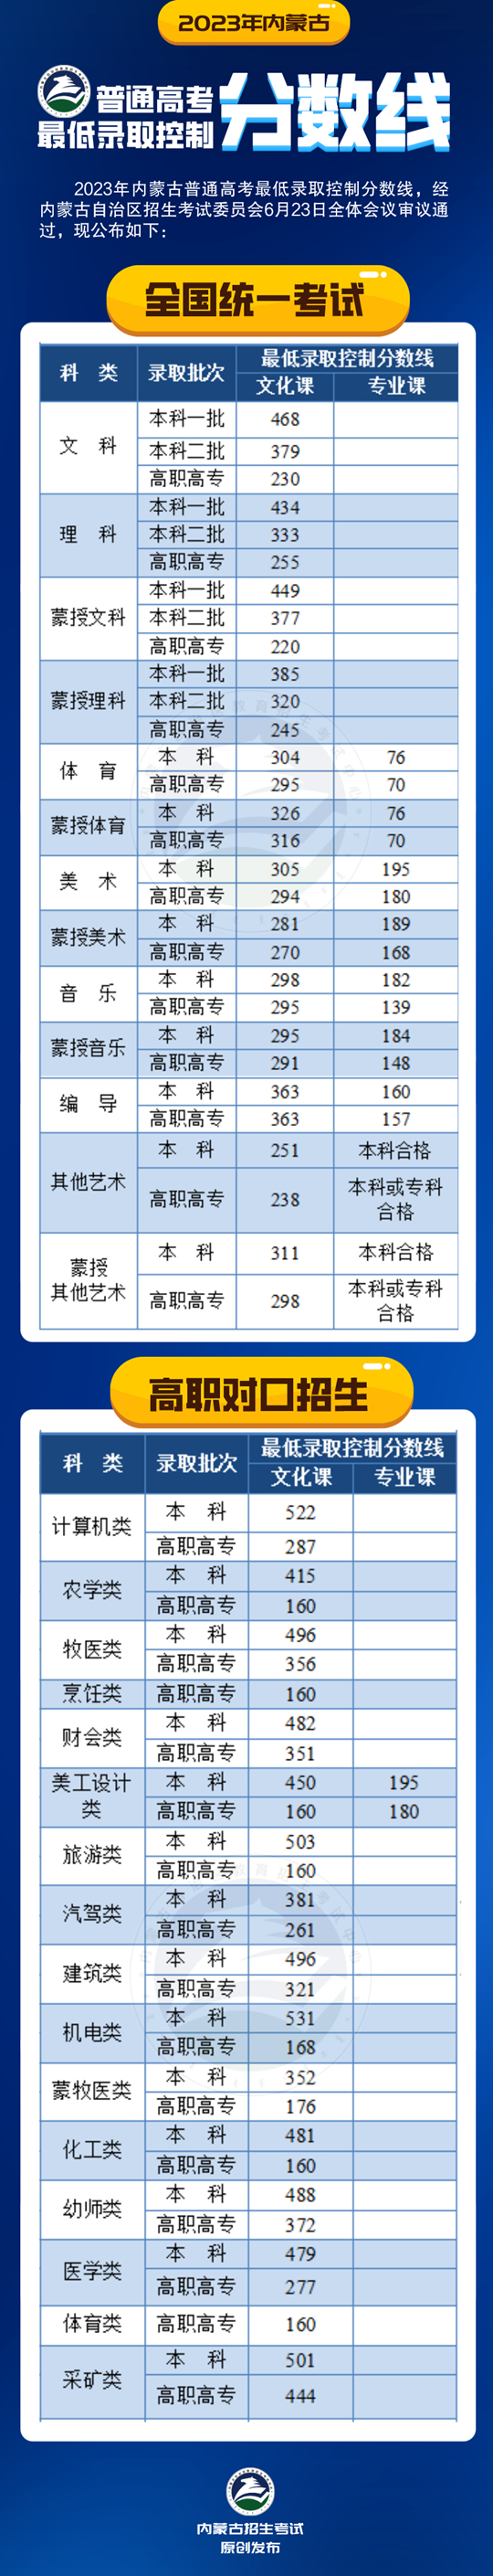 2023年内蒙古普通高考最低录取控制分数线公告